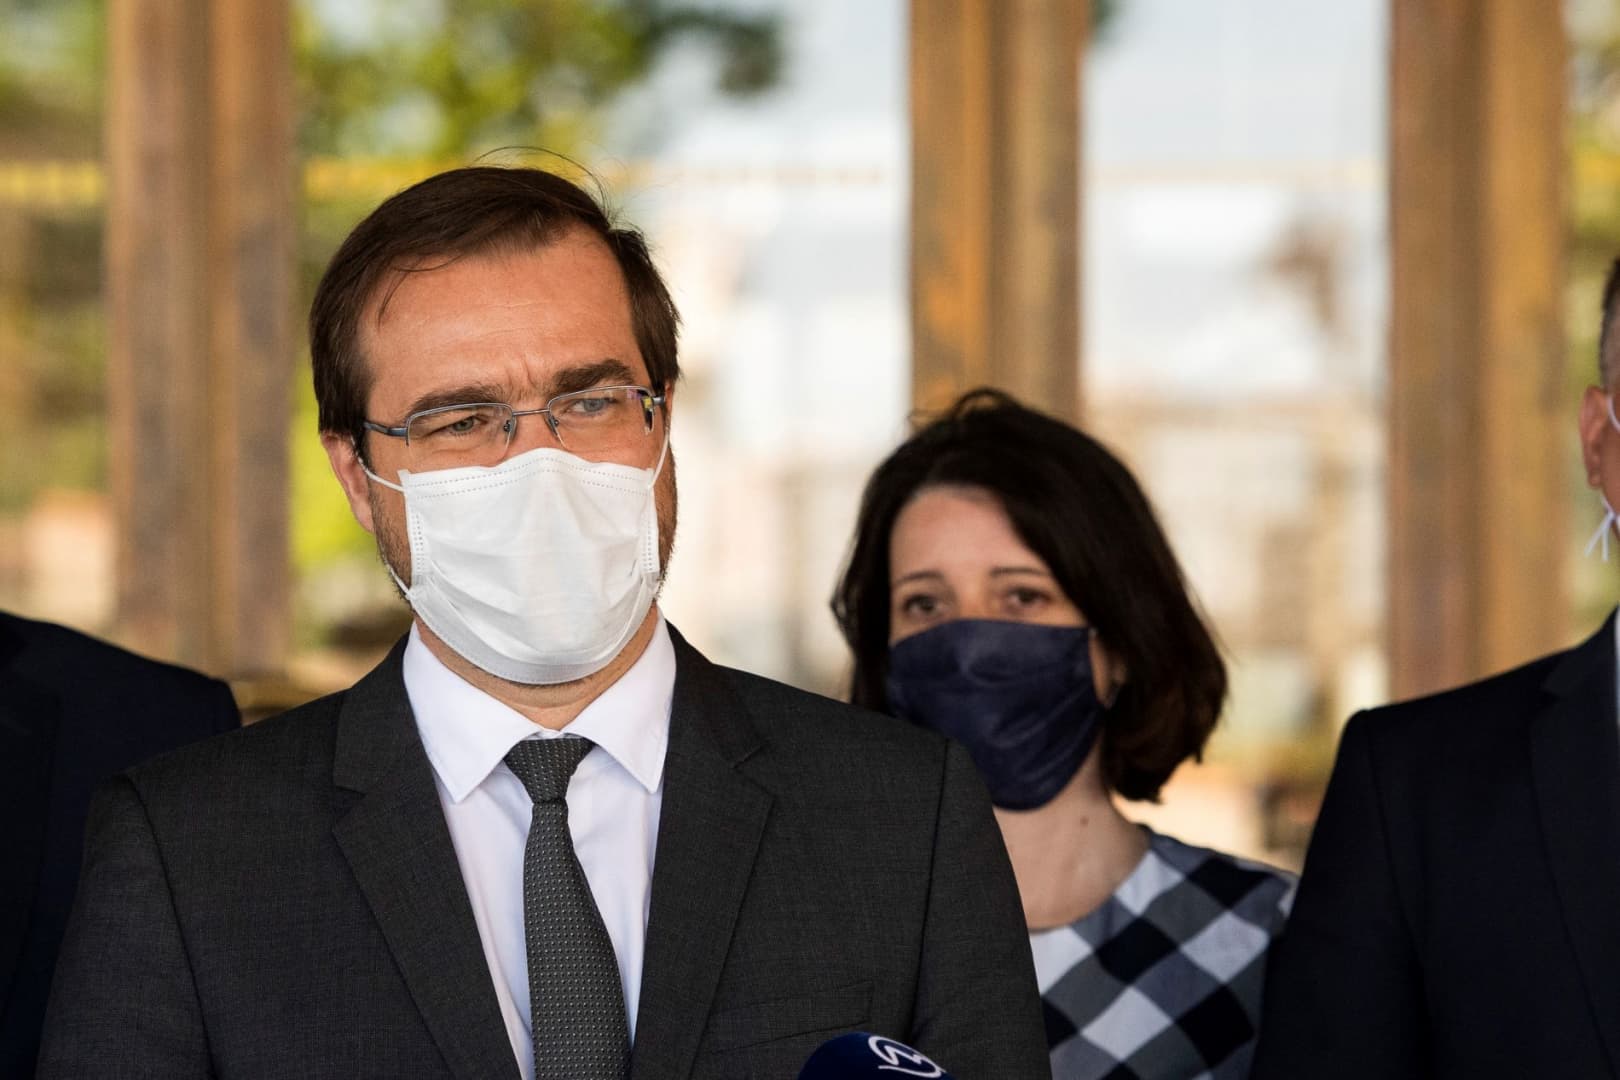 Az egészségügyi miniszter szerint nem igaz, hogy az arcmaszk miatt túl sok szén-dioxidot lélegzünk be